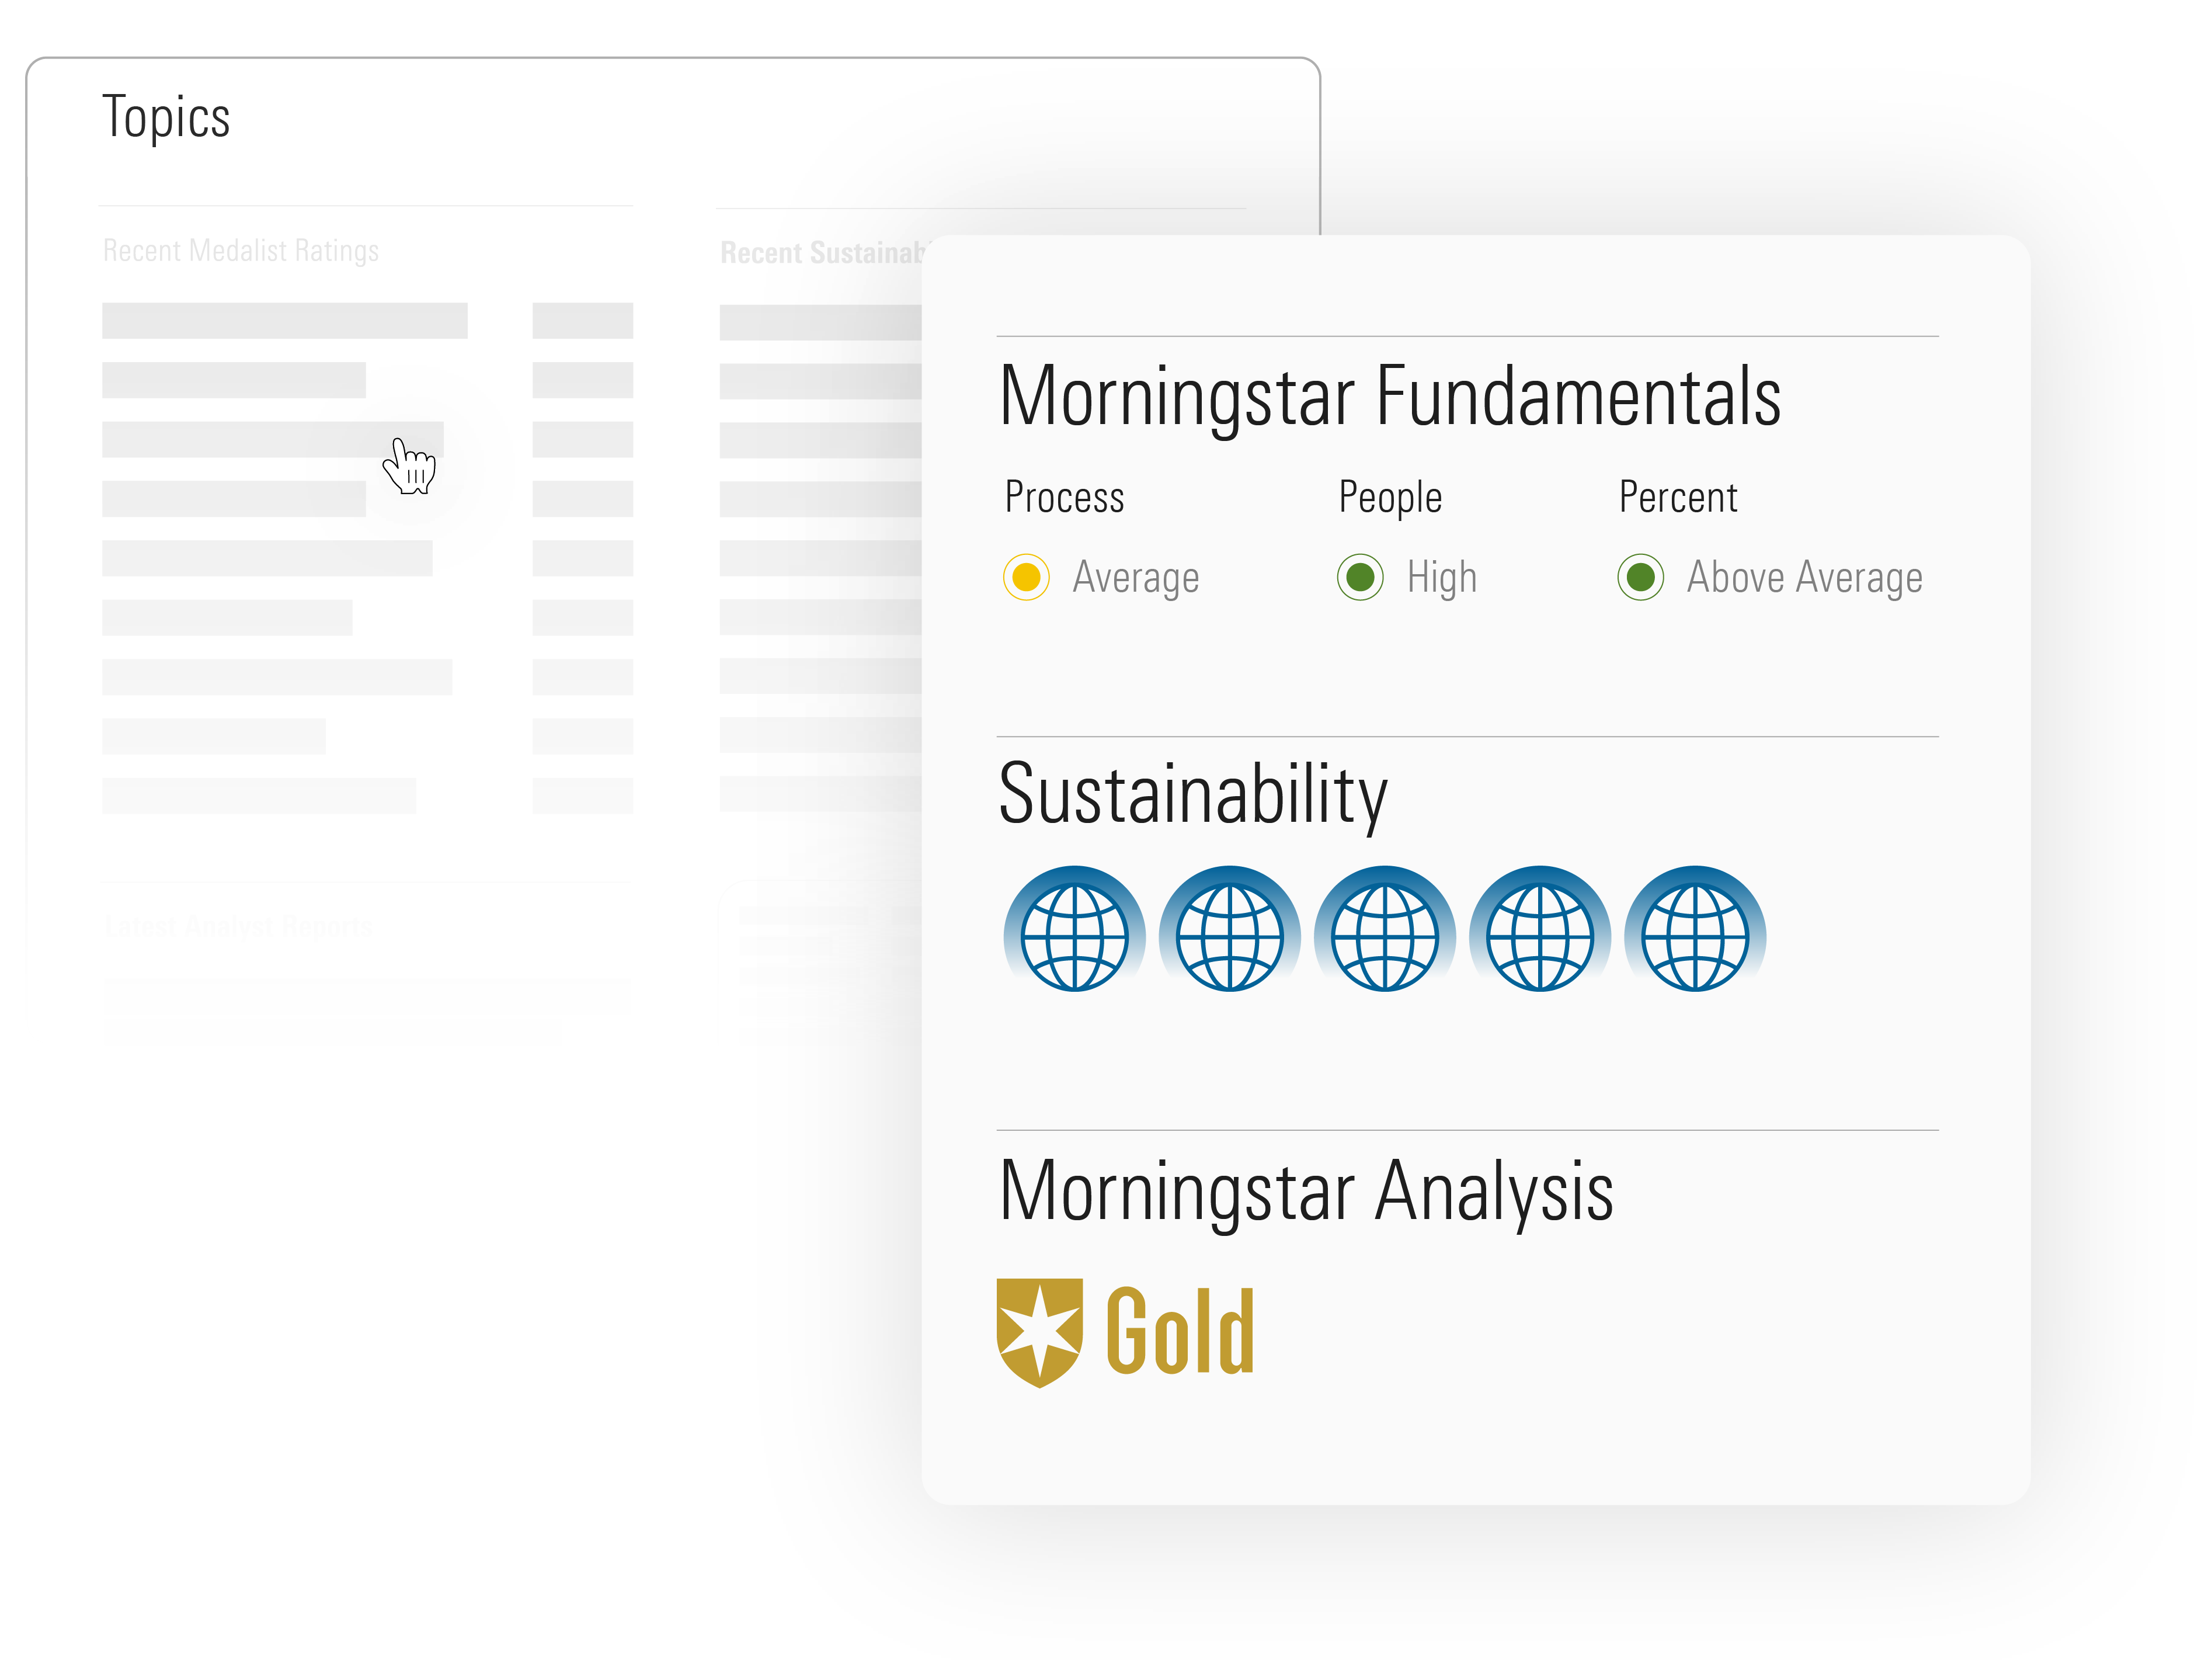 Illustration of Morningstar topics, including Morningstar Fundamentals, Sustainability, and Morningstar Analysis.